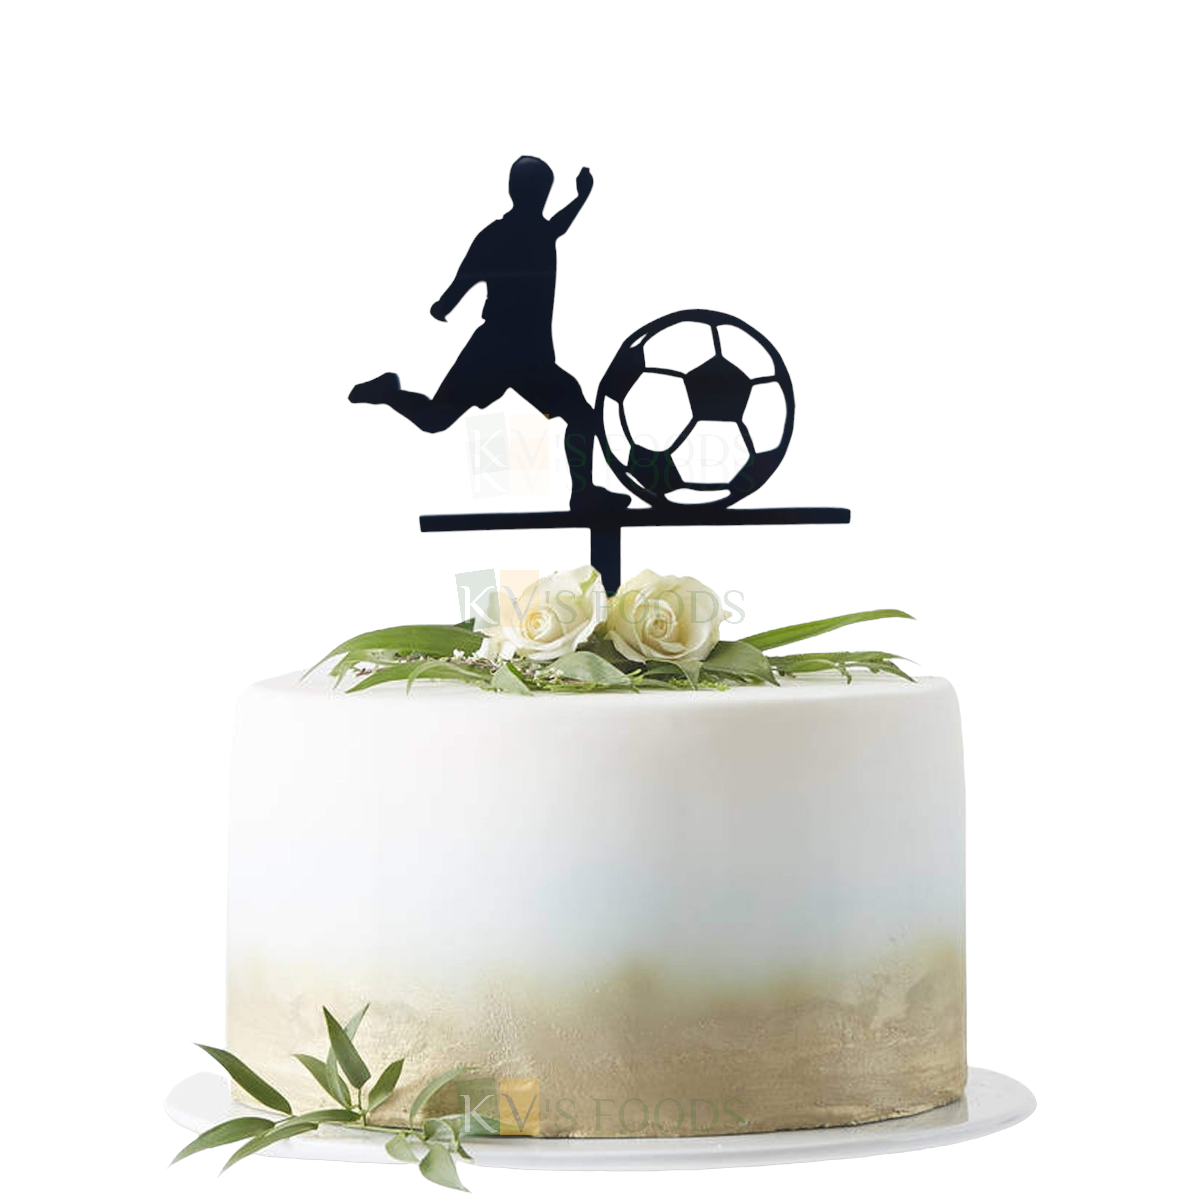 Football with Poptop on Sheet Cake – Tiffany's Bakery